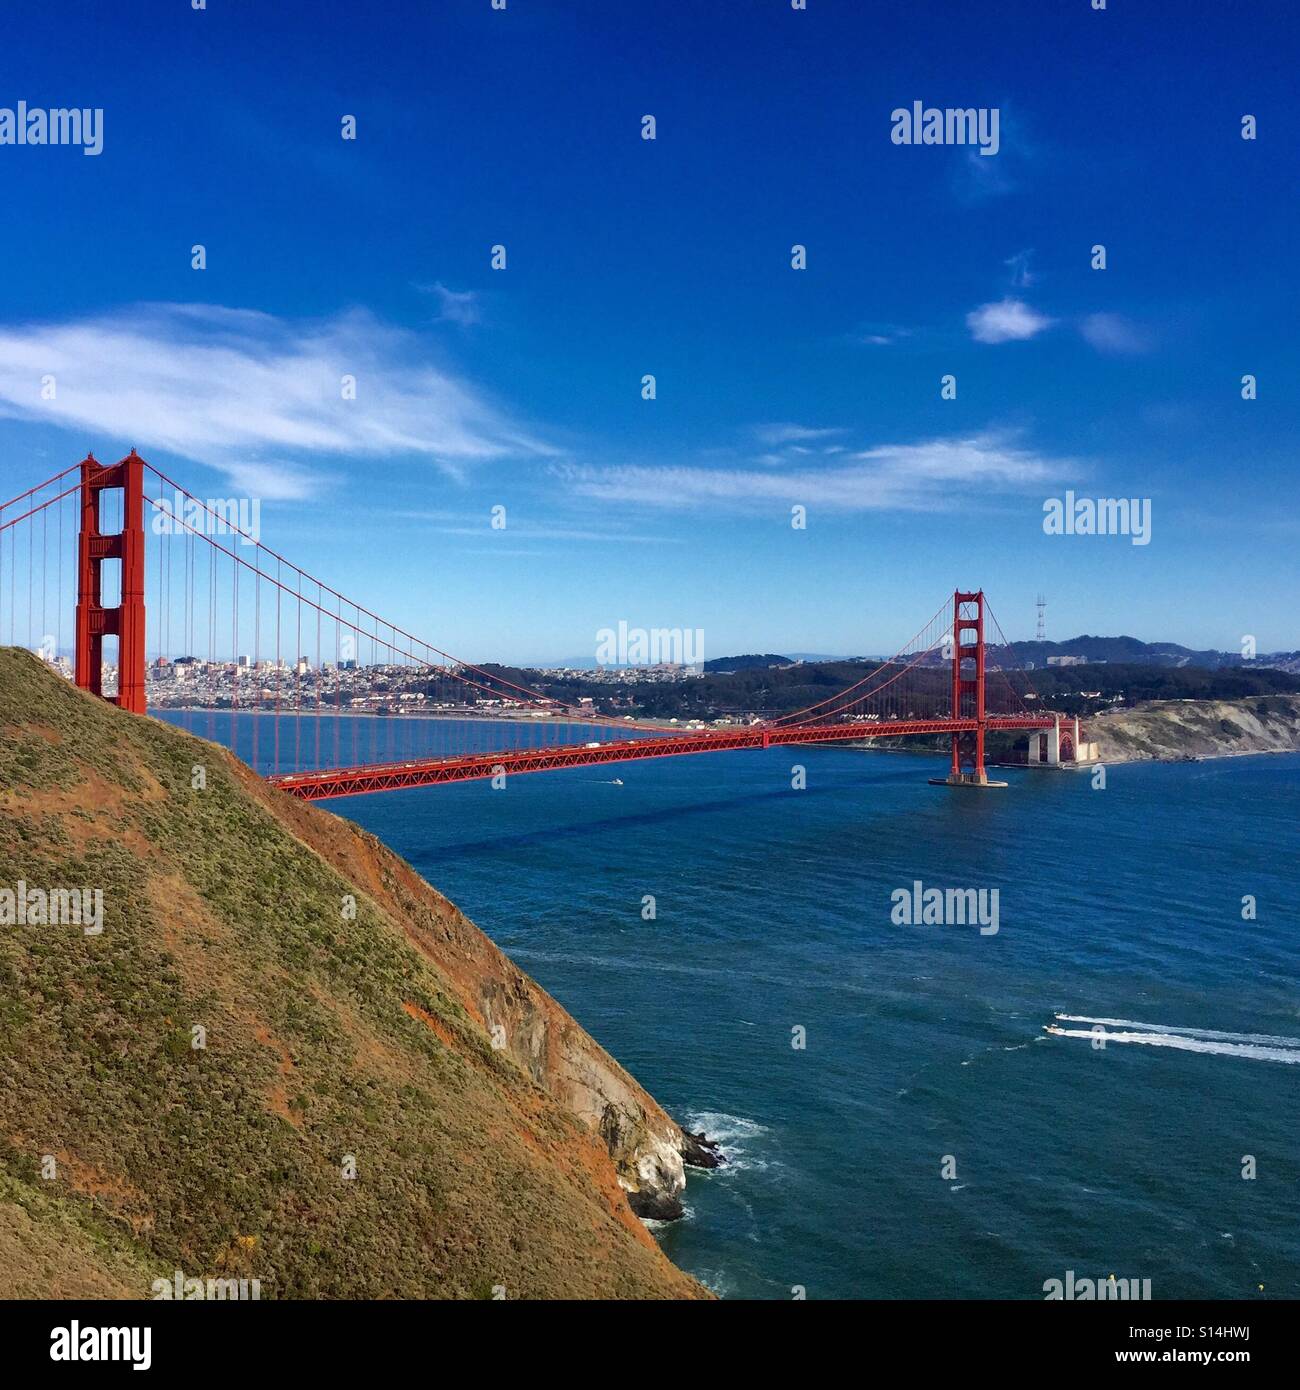 Schöne San Francisco Golden Gate Bridge von iPhone 6 s gefangen genommen. Was für ein schöner Tag in der Bay Area! 👒 Stockfoto